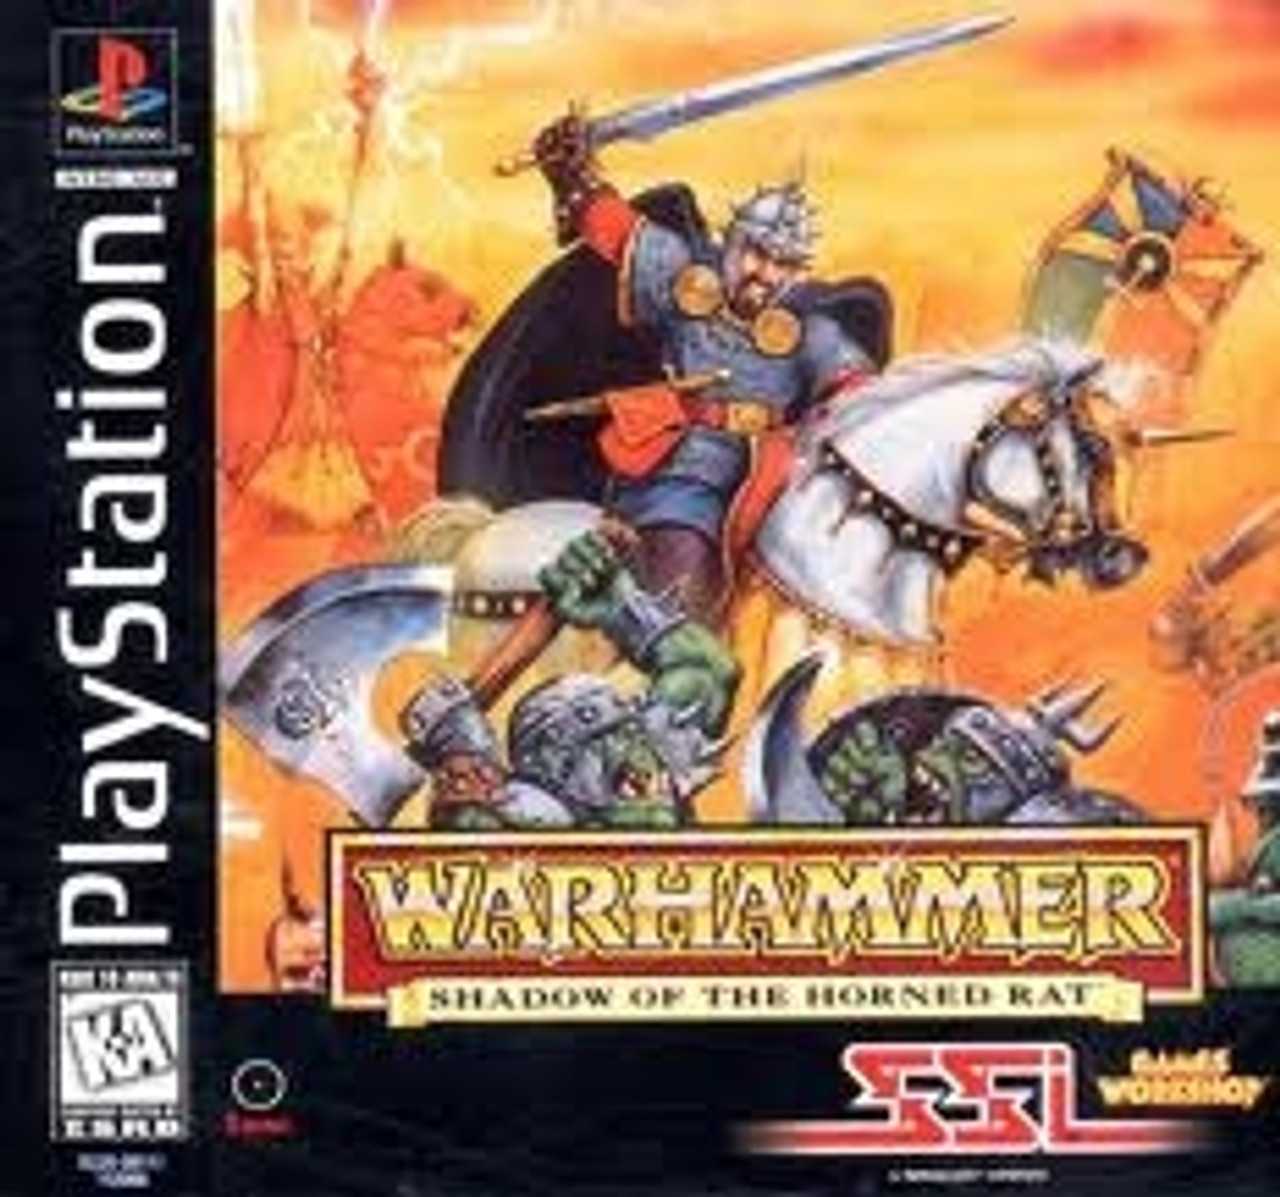 download warhammer rat game